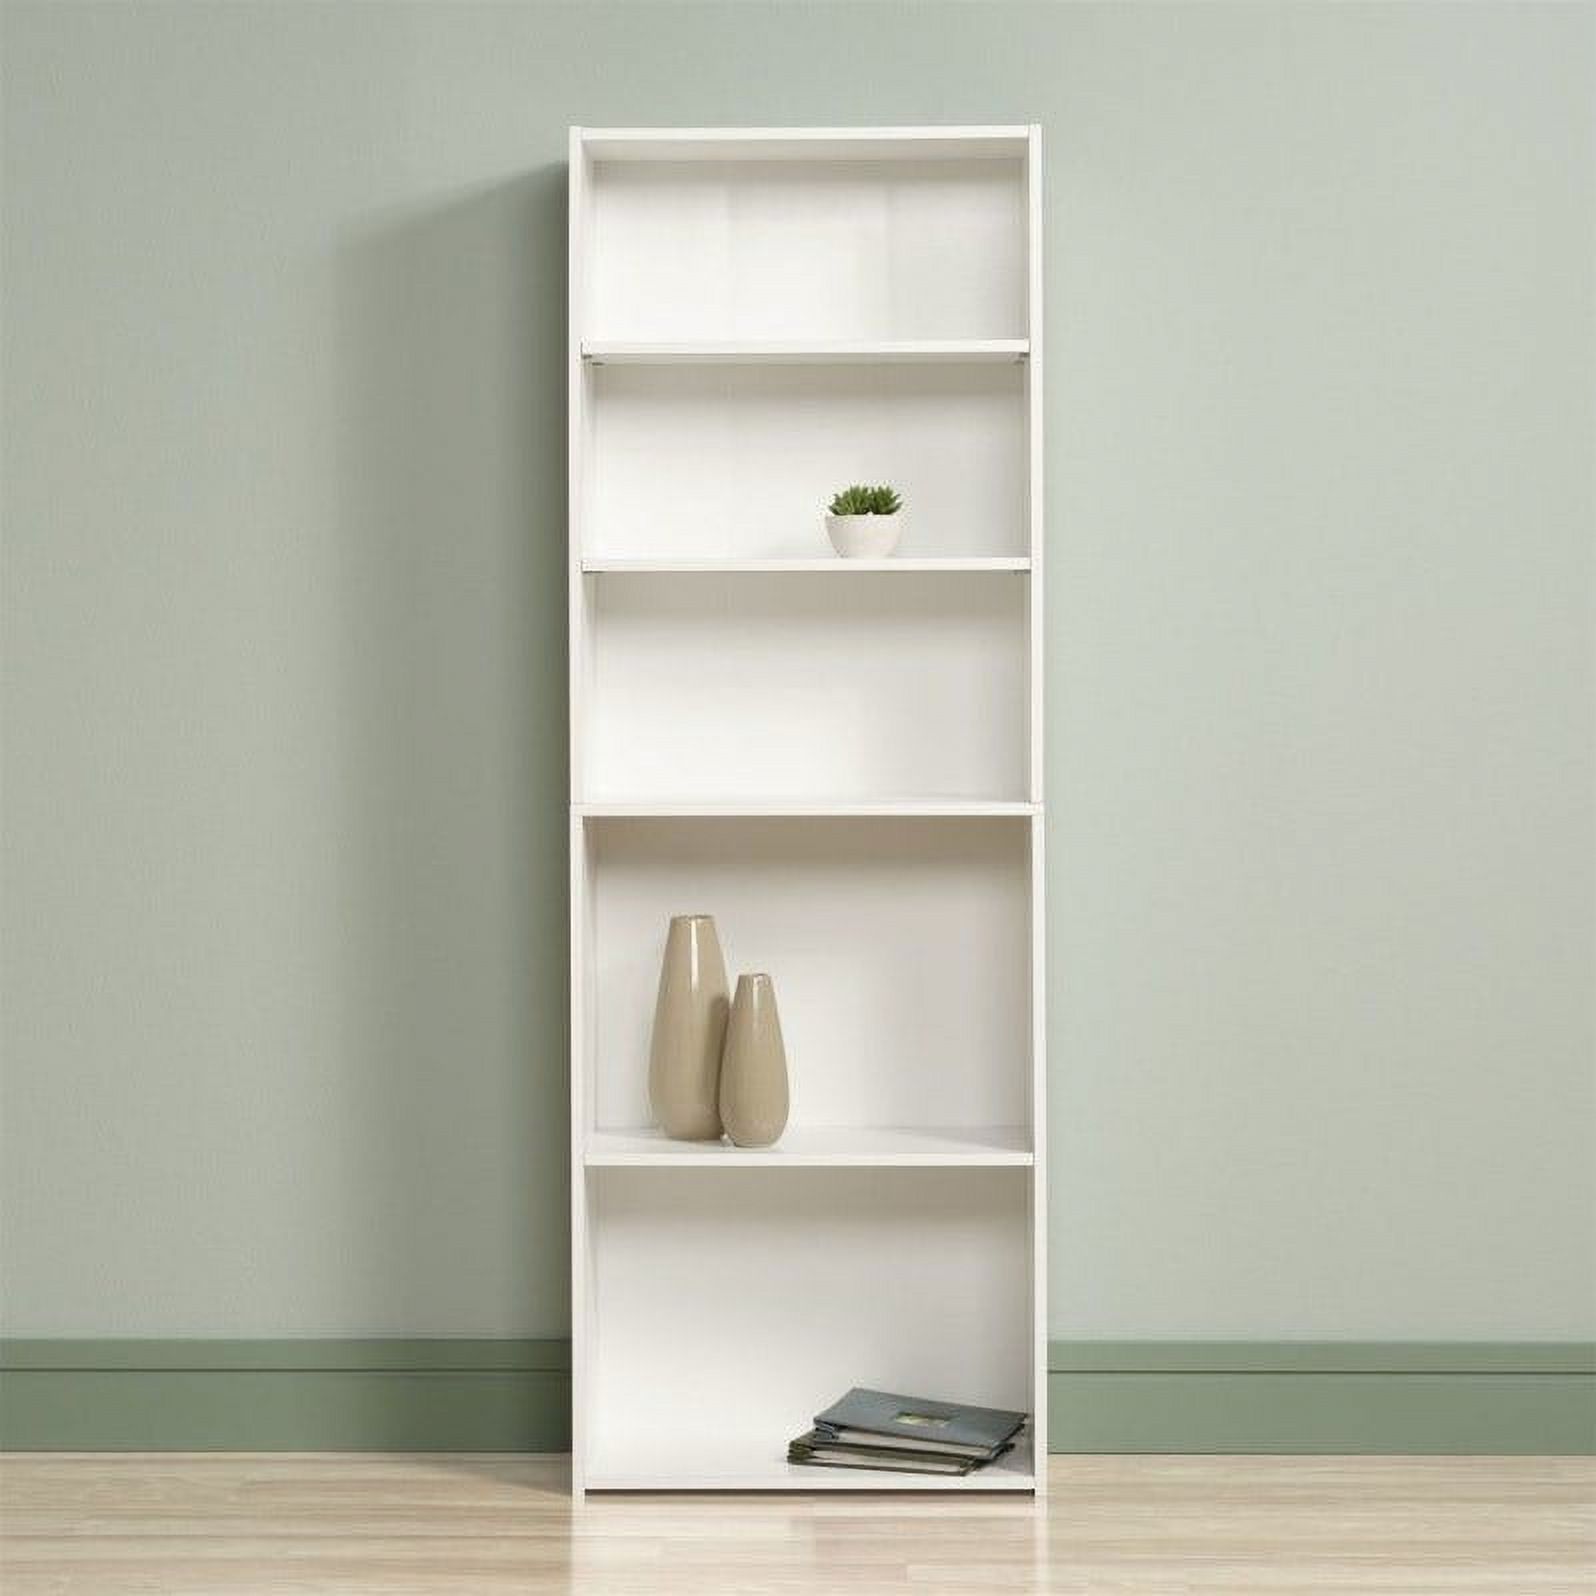 Sauder Beginnings 5 -Shelf Bookcase, Soft White Finish - image 1 of 9